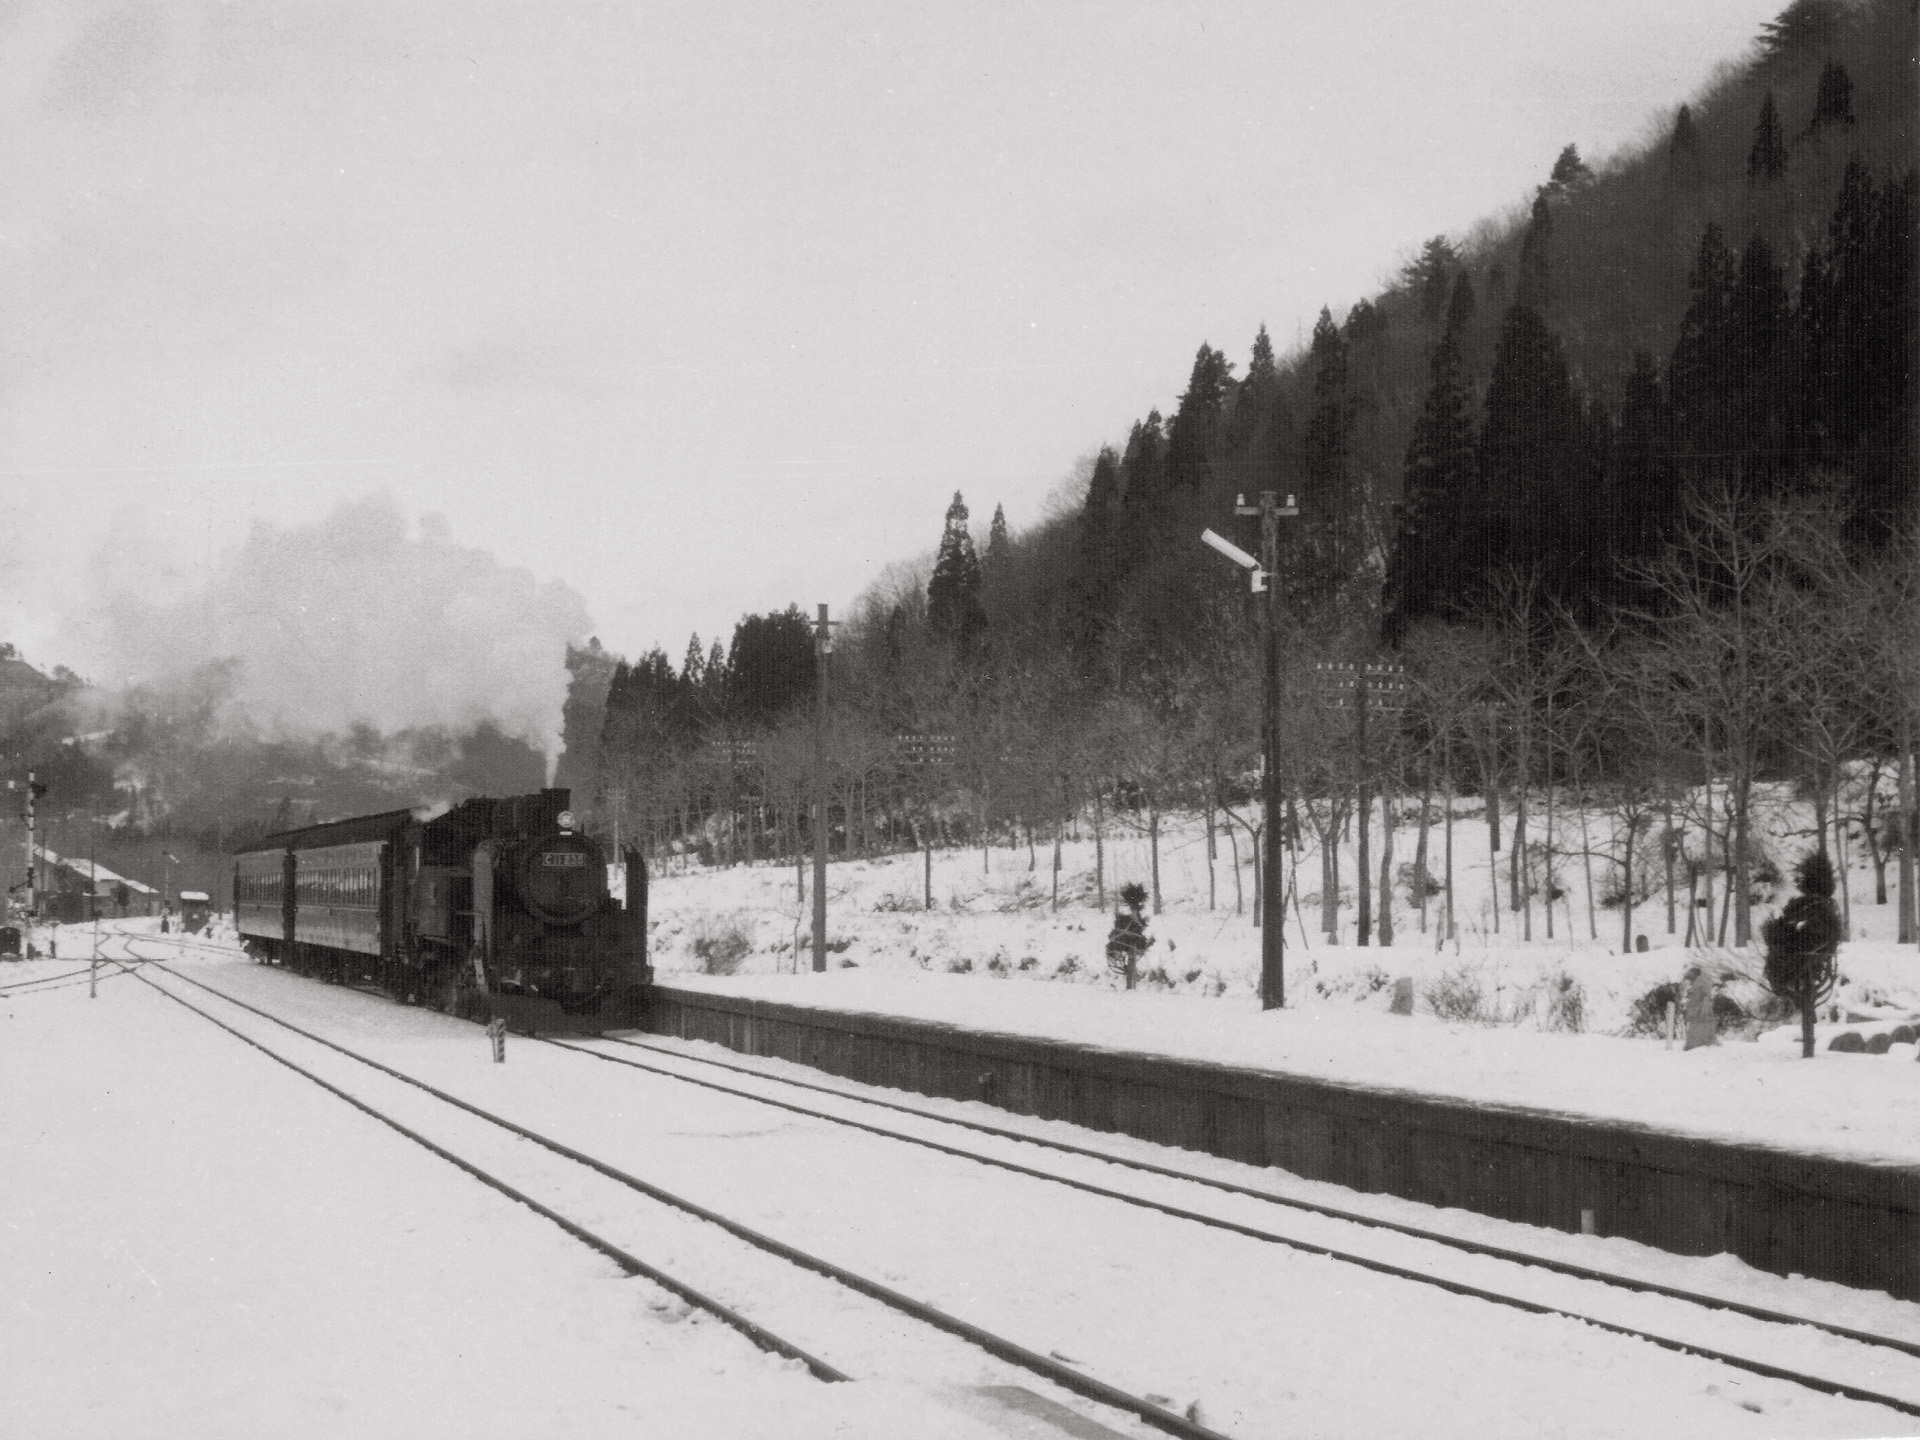 鉄道 蒸気機関車 下り列車到着 セピア色の風景 壁紙19x1440 壁紙館